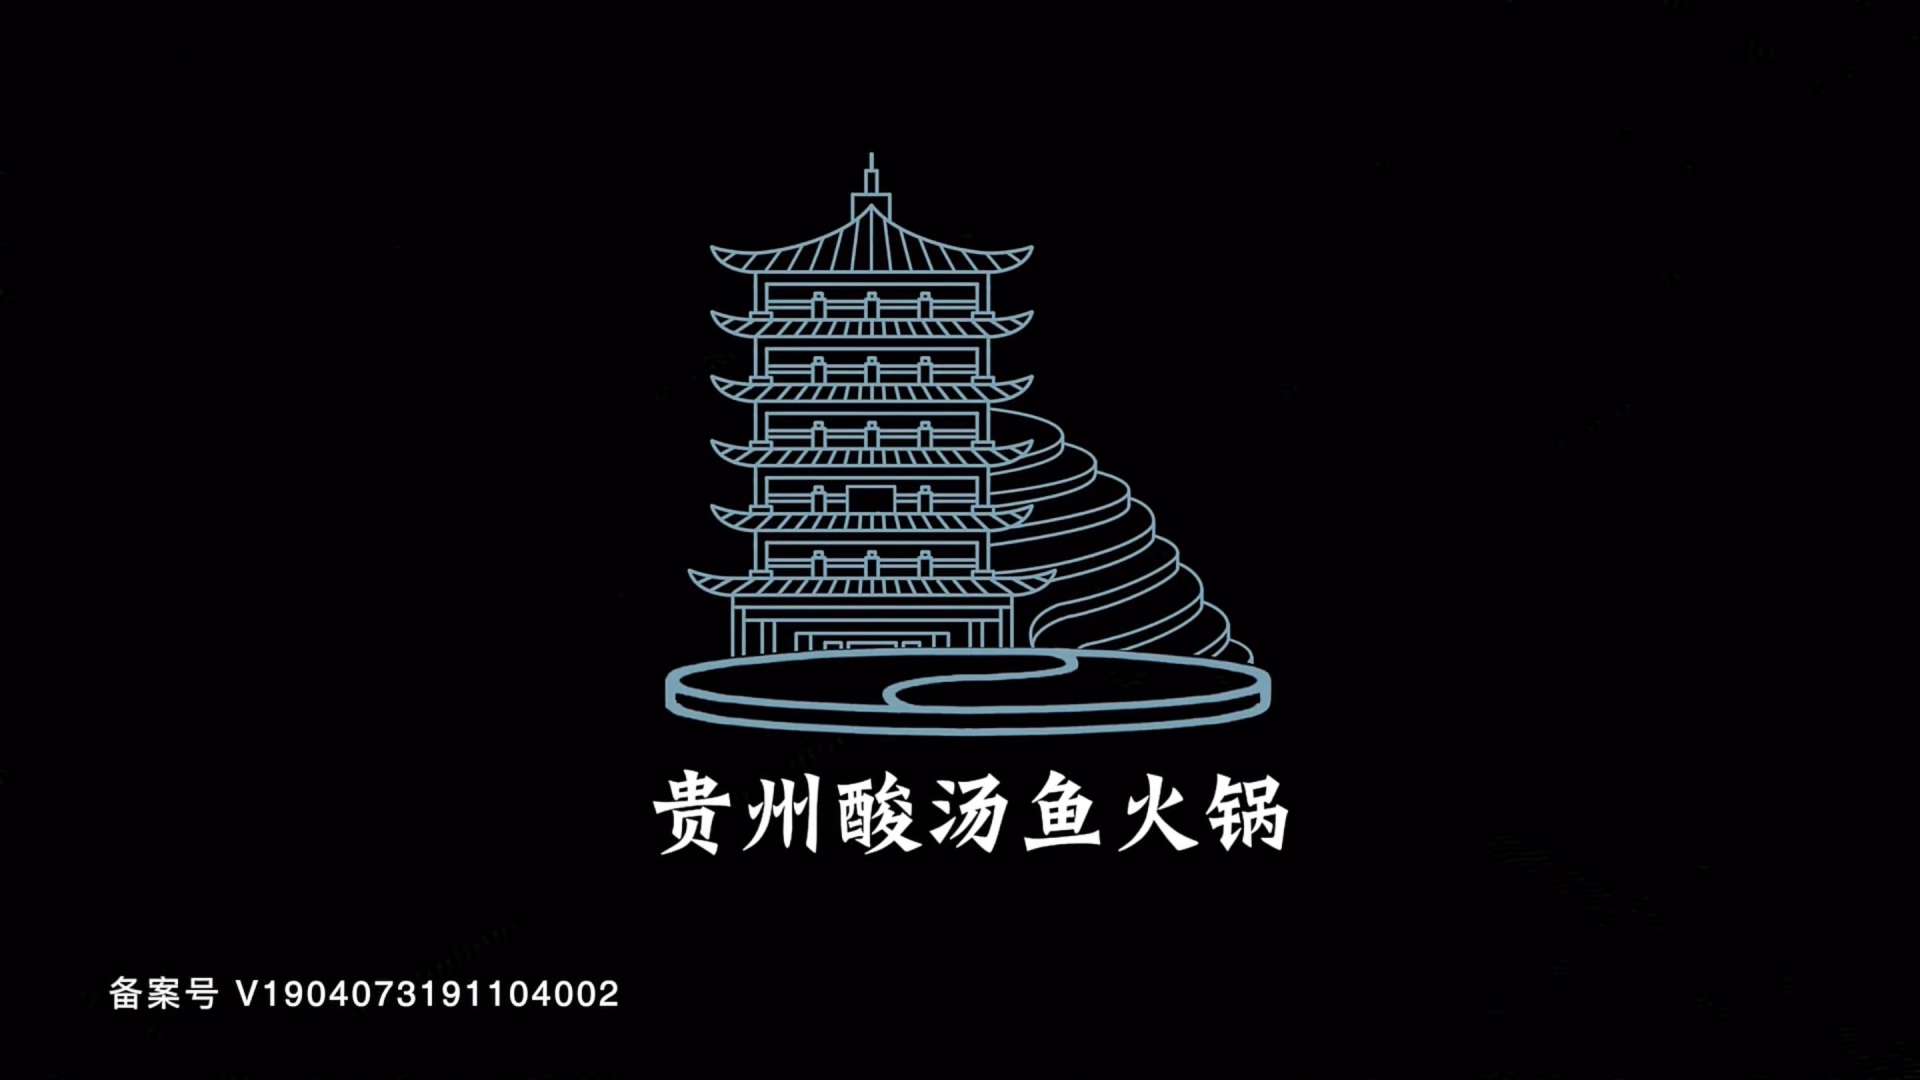 《沸腾吧火锅》 第9集 贵州酸汤鱼火锅